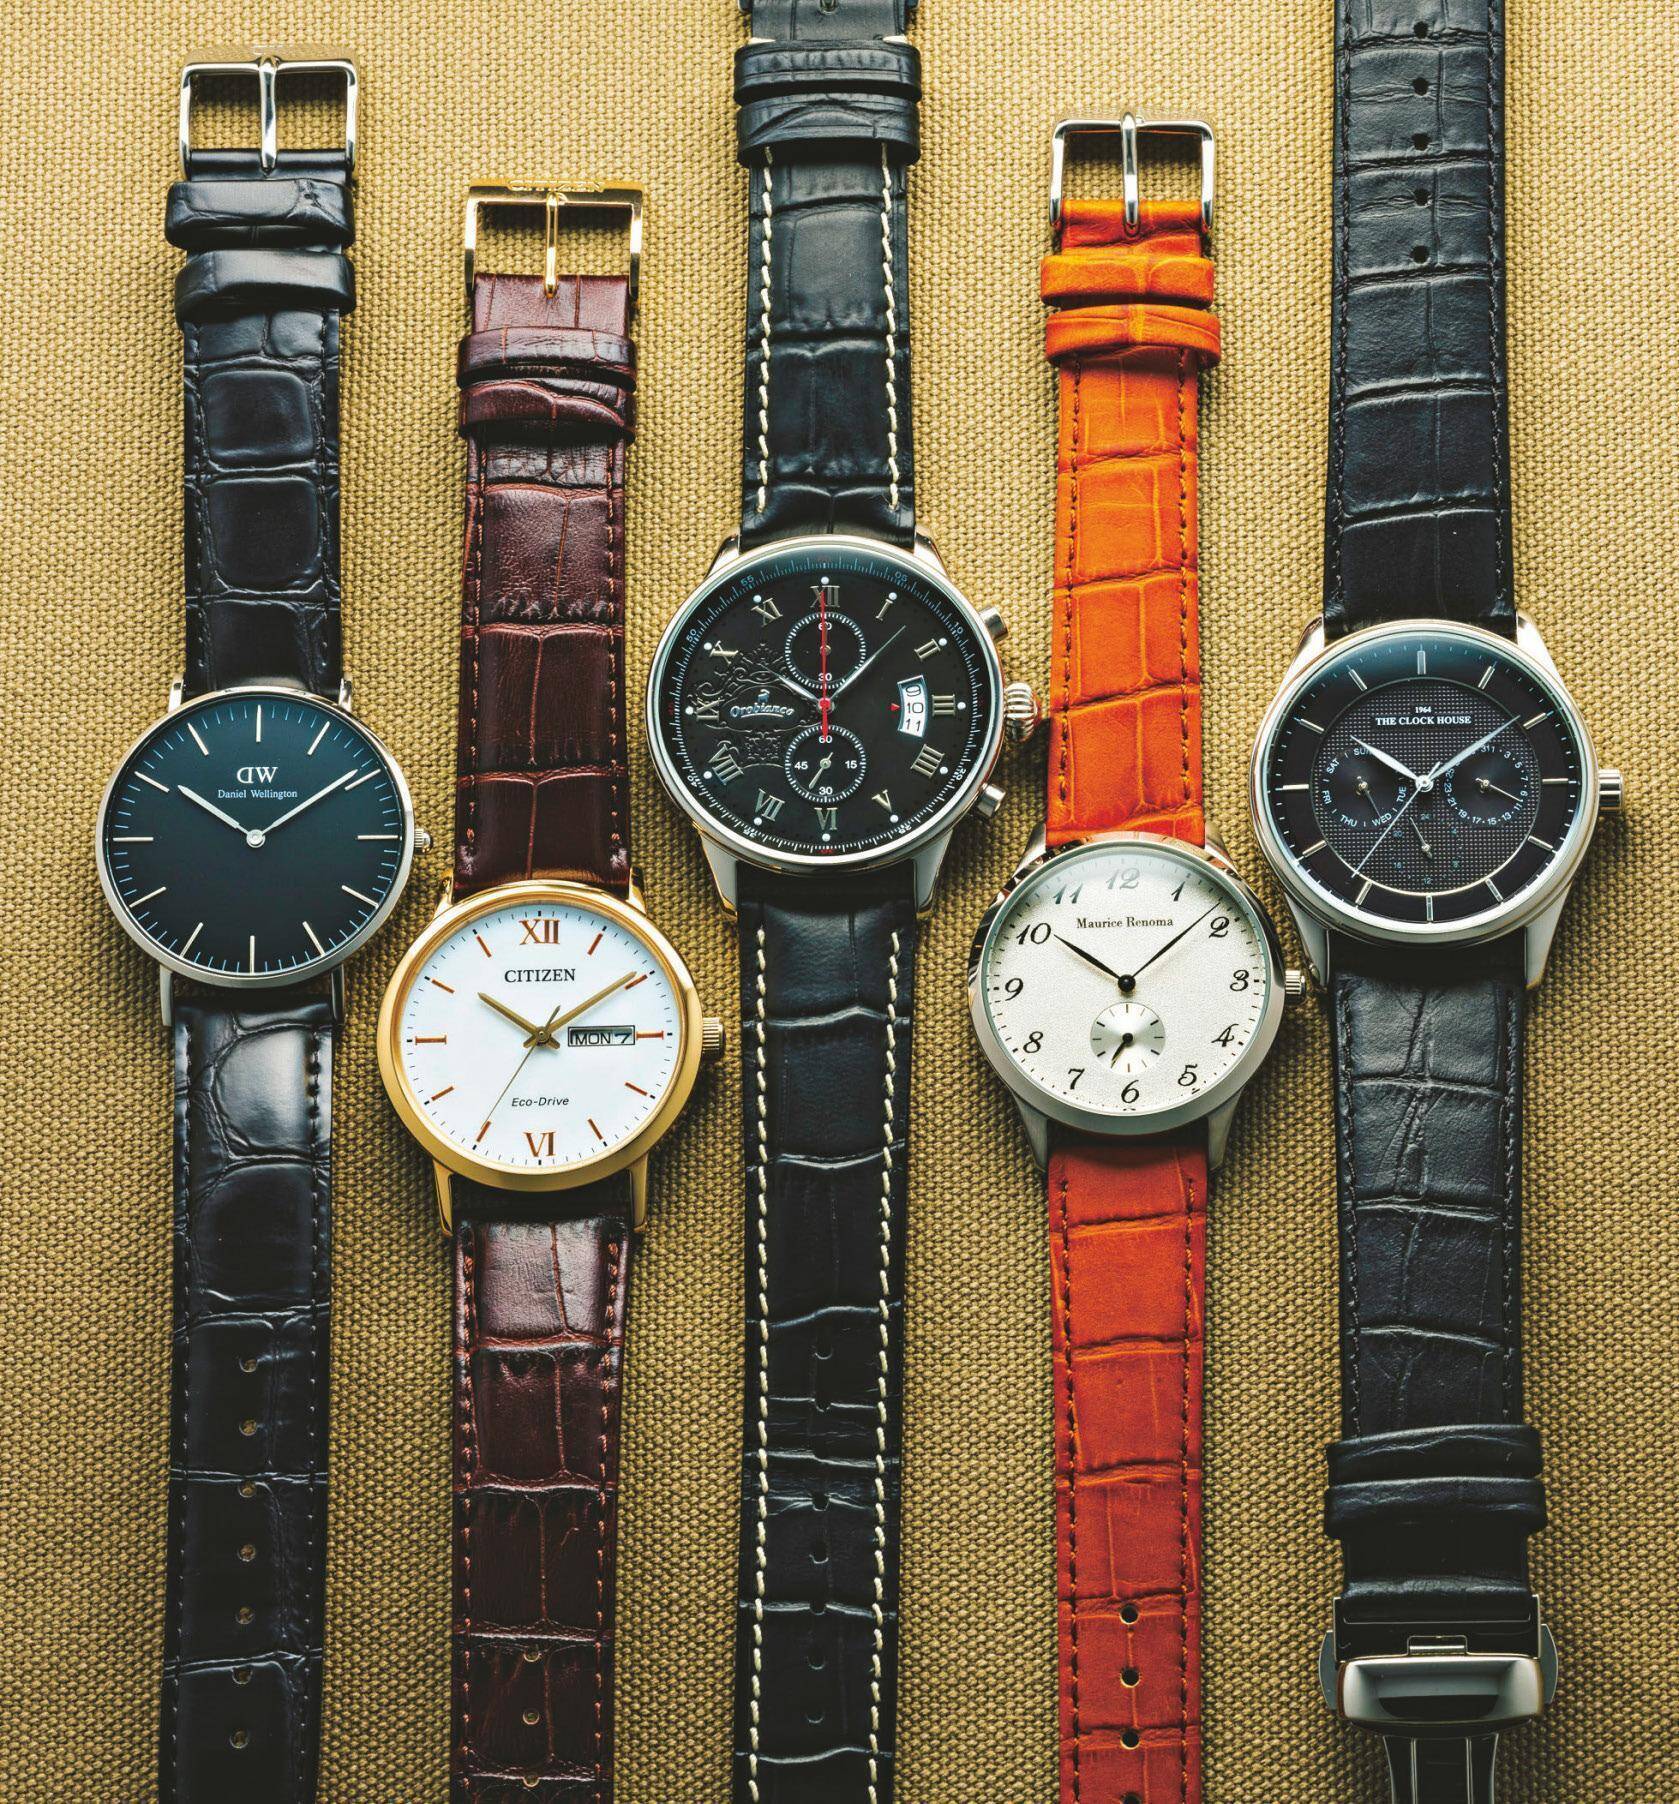 3万円以下で高級時計に見える革ベルト時計5選 (2017年11月11日) - エキサイトニュース